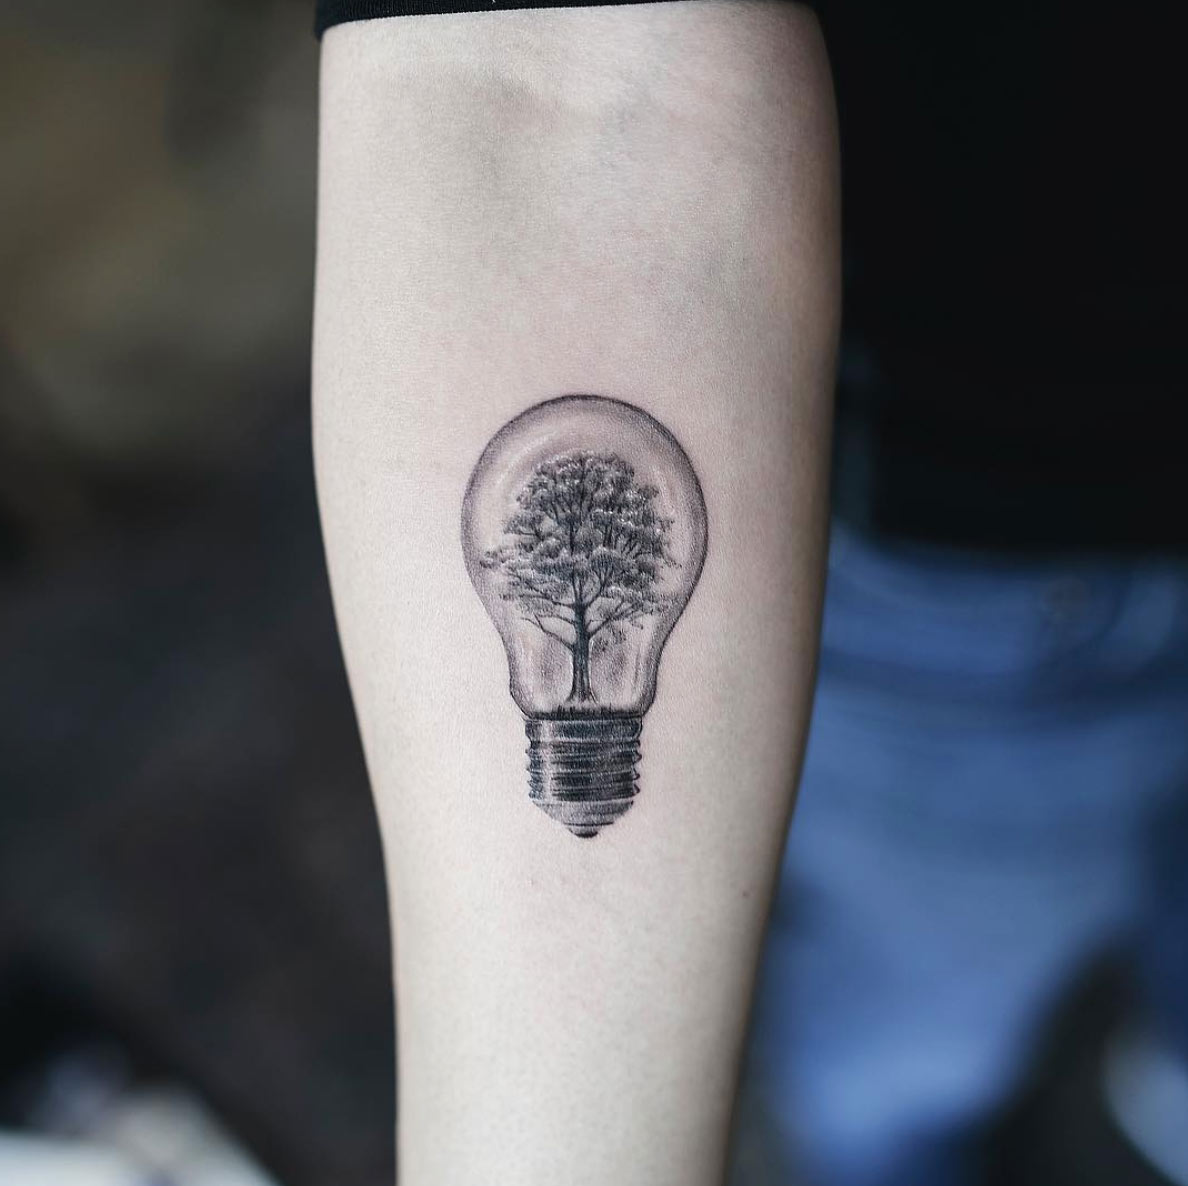 Lightbulb by Nando